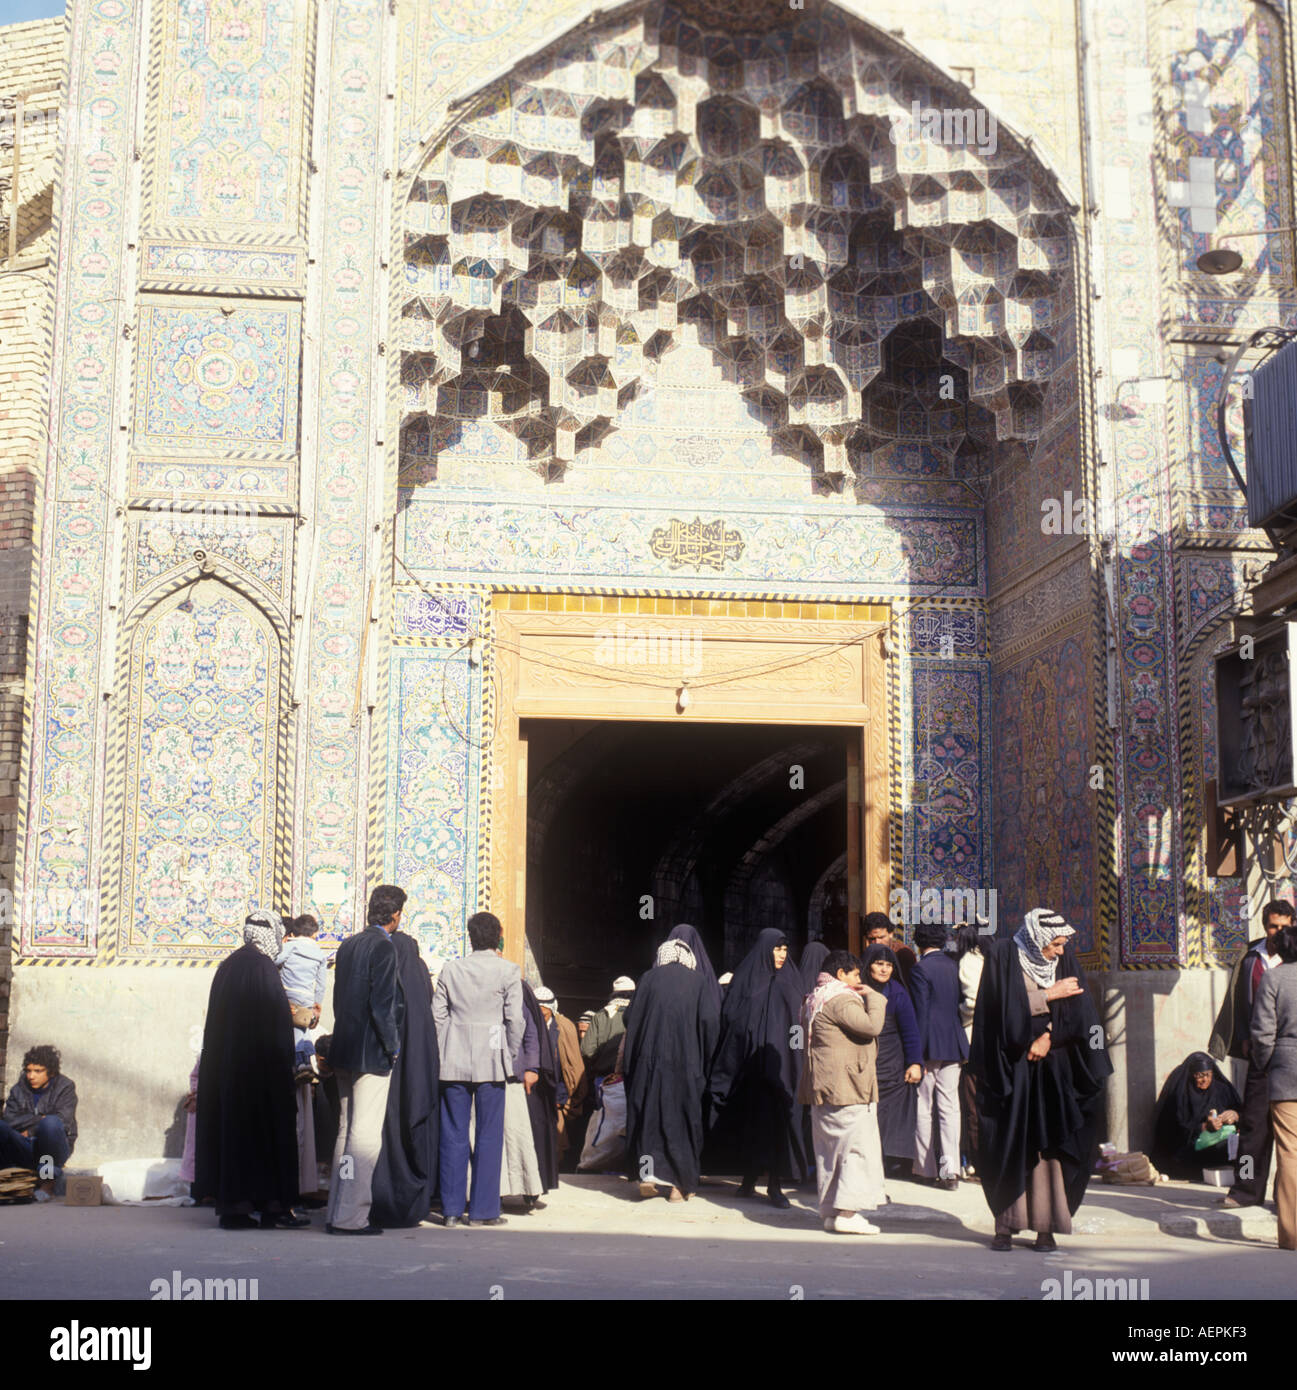 Shiite shrine Kerbala Iraq Stock Photo